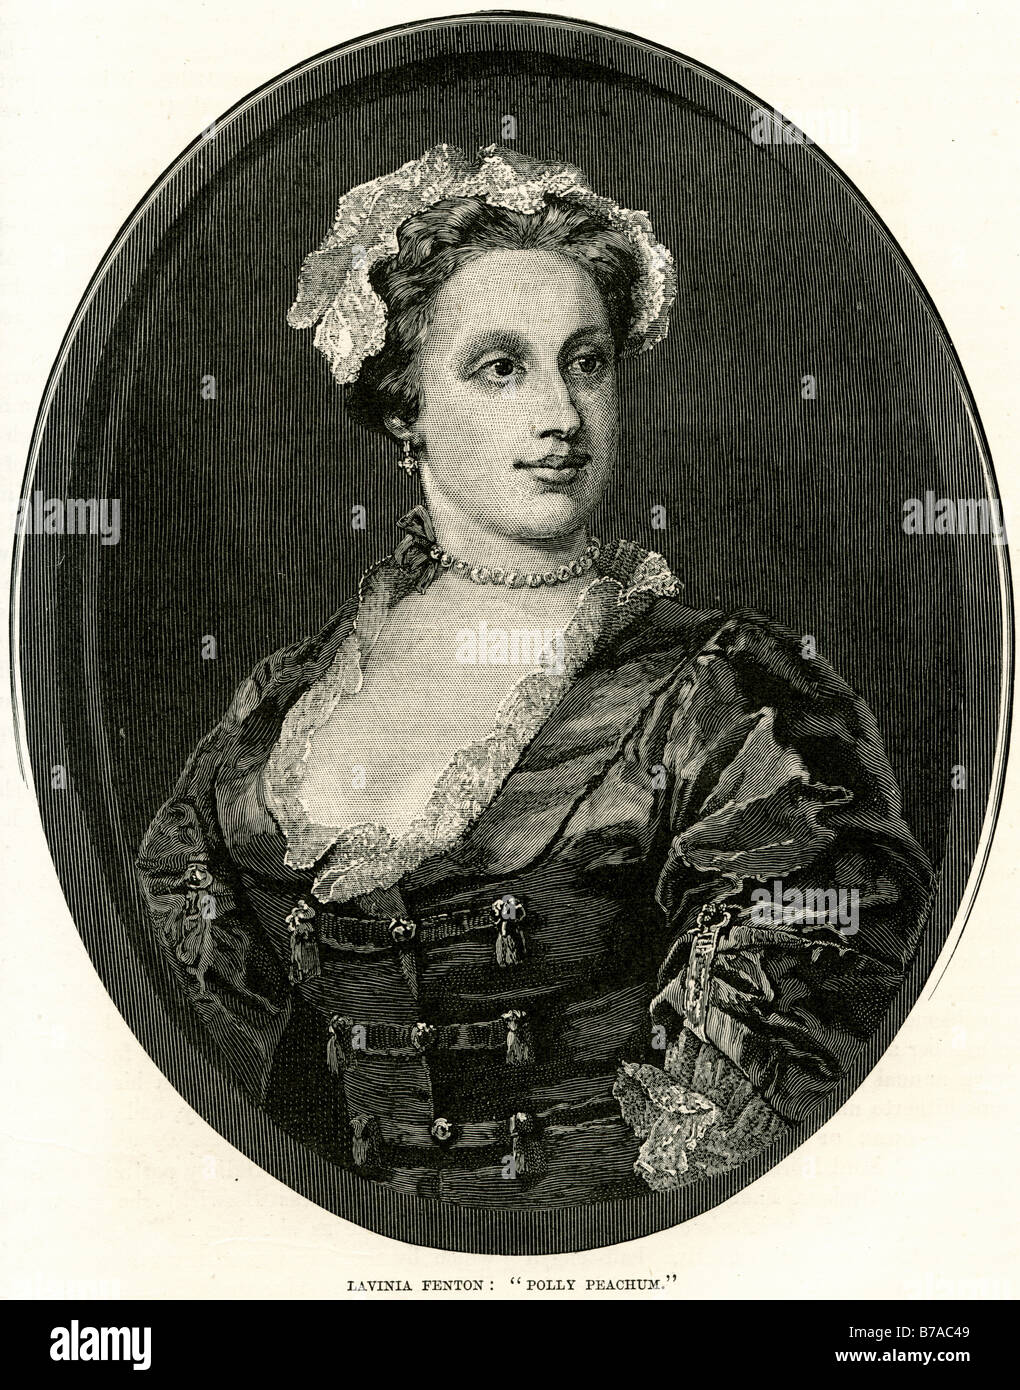 lavinia fenton polly peachum Paulet Duchess of Bolton 1708 - 24 January 1760 English actress Stock Photo